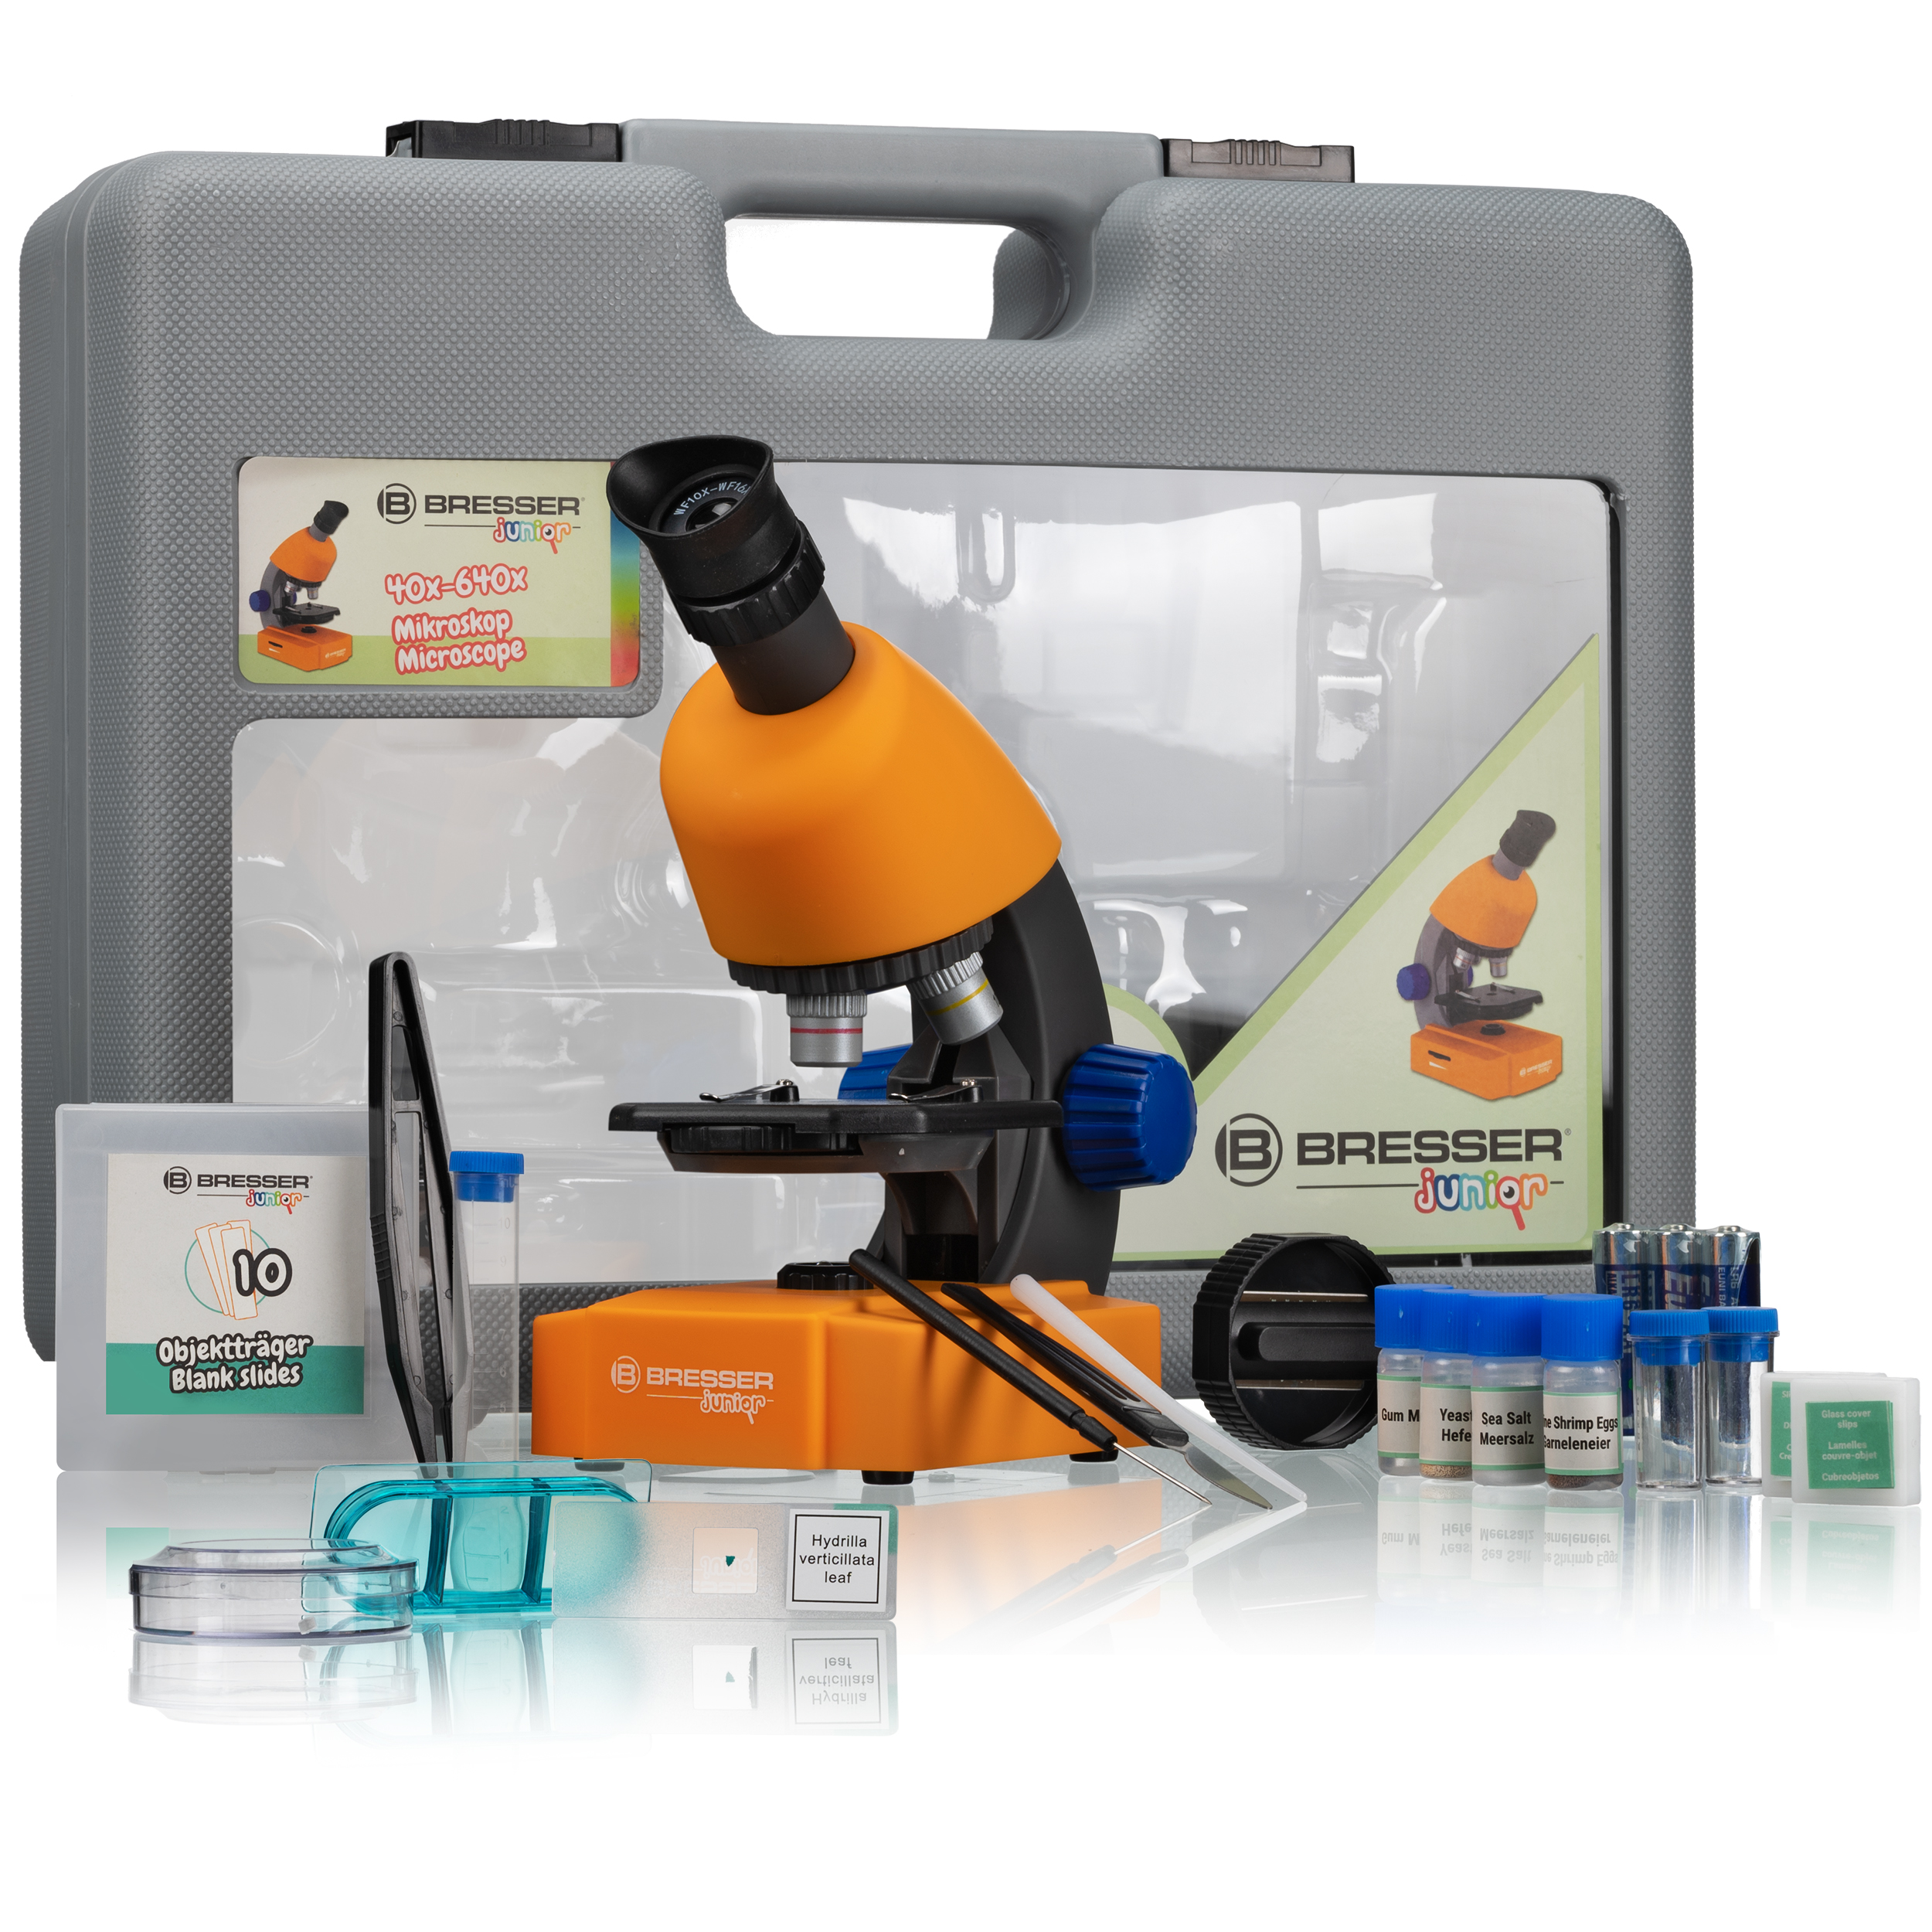 BRESSER JUNIOR Microscopio 40x-640x con complementos y maleta de transporte